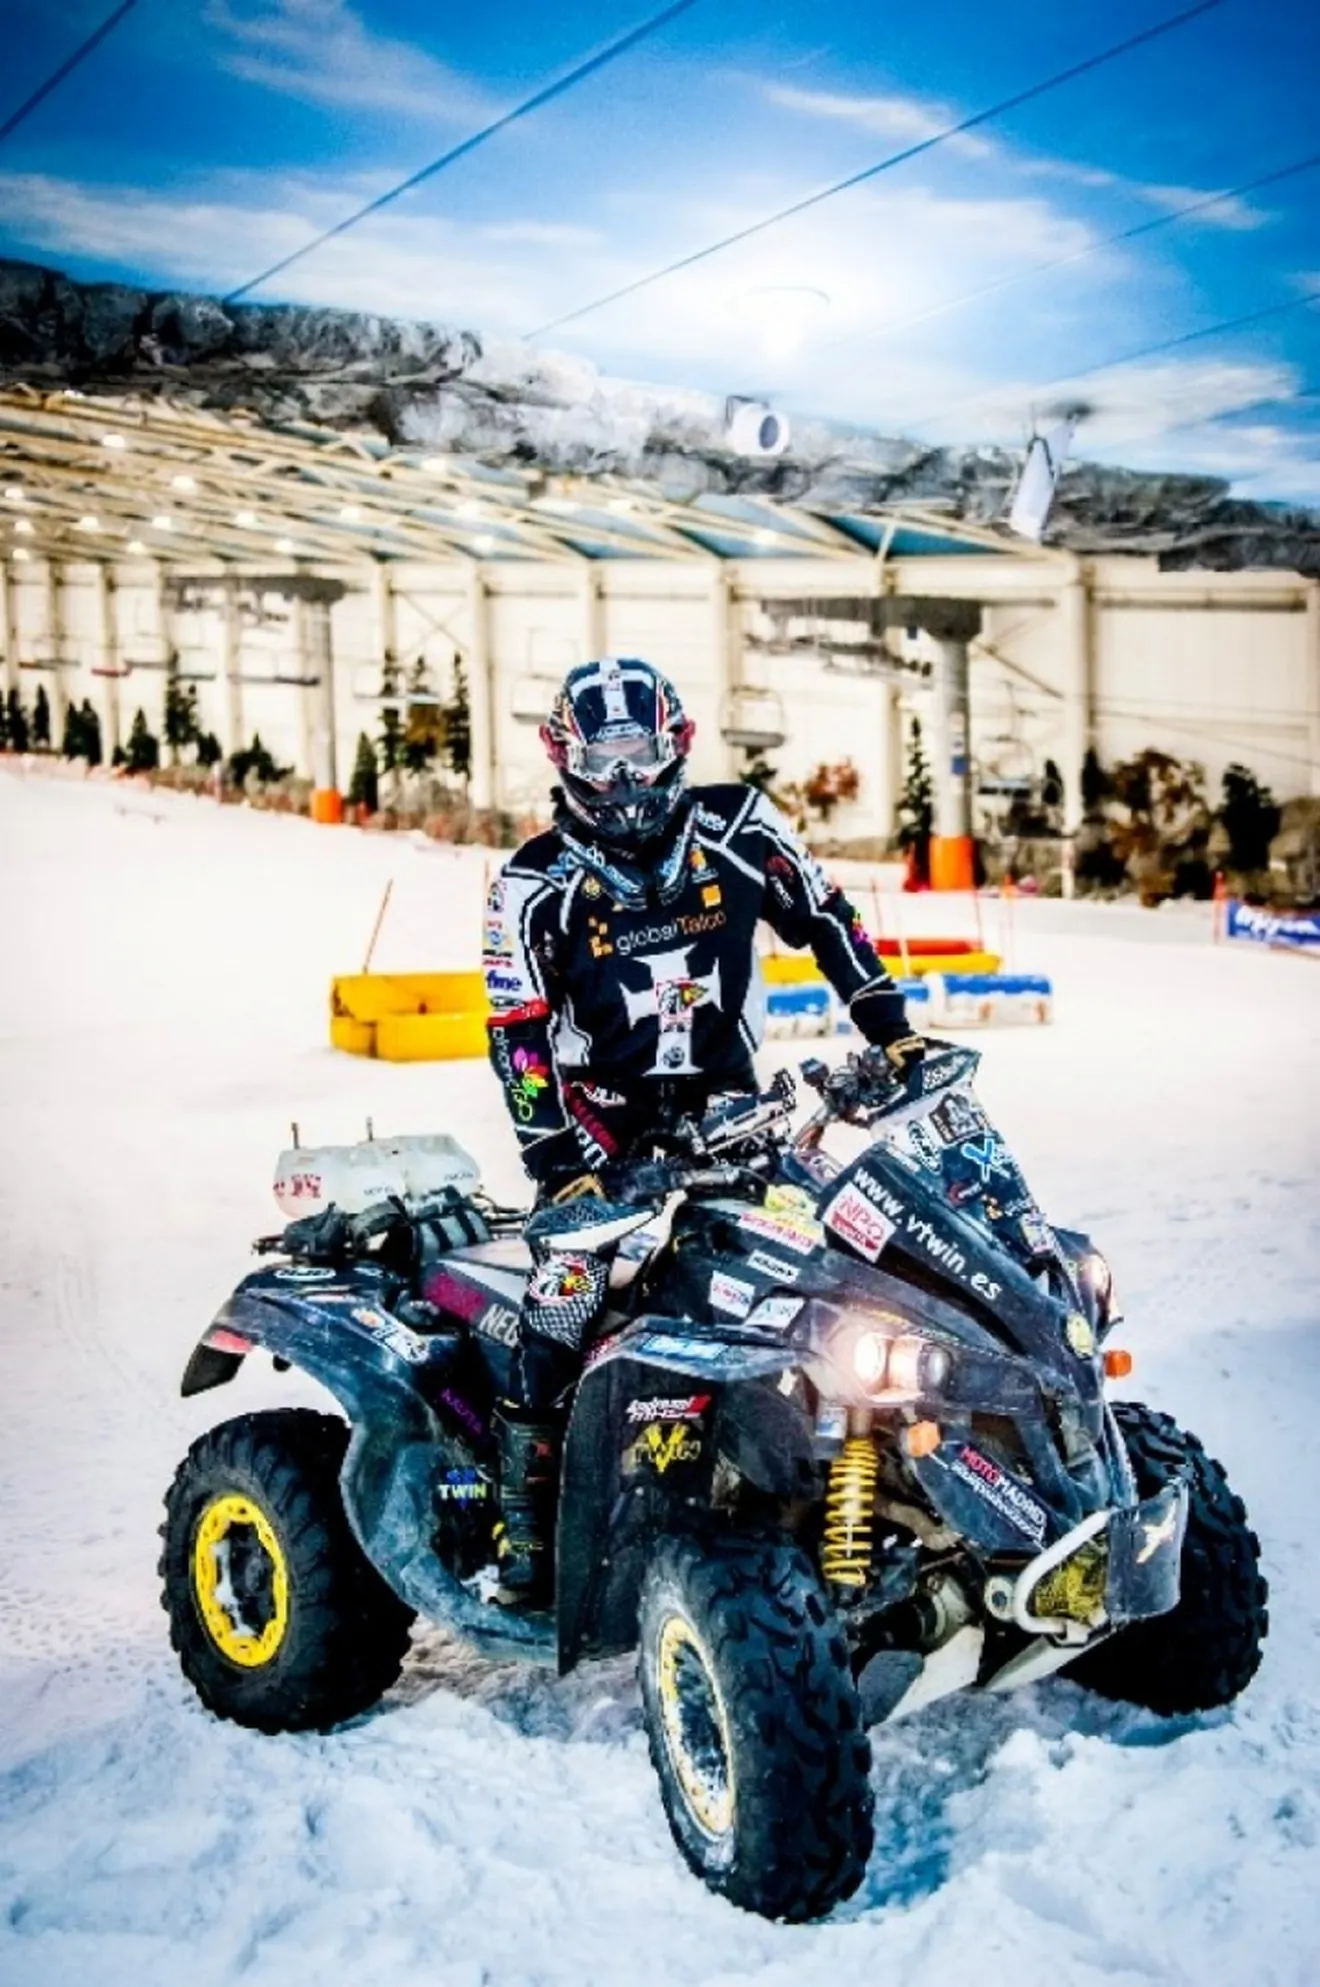 José Luis Espinosa estará arropado por MotoMadrid en el Dakar 2014